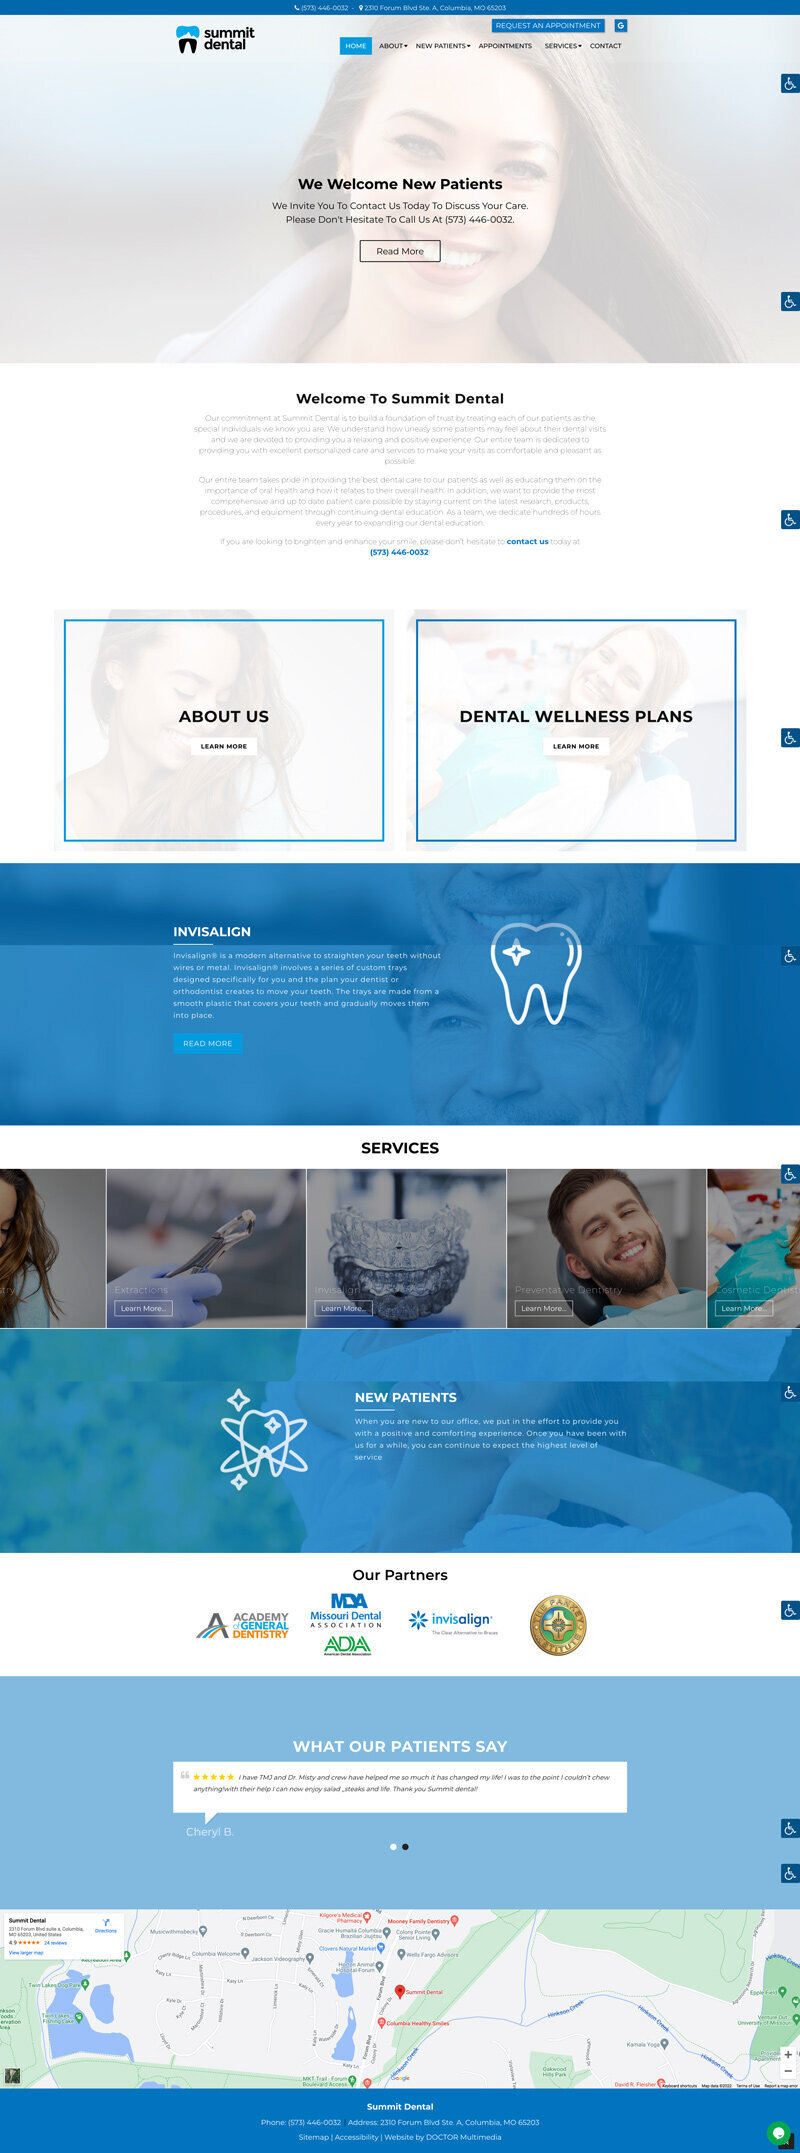 old website design of summit dental